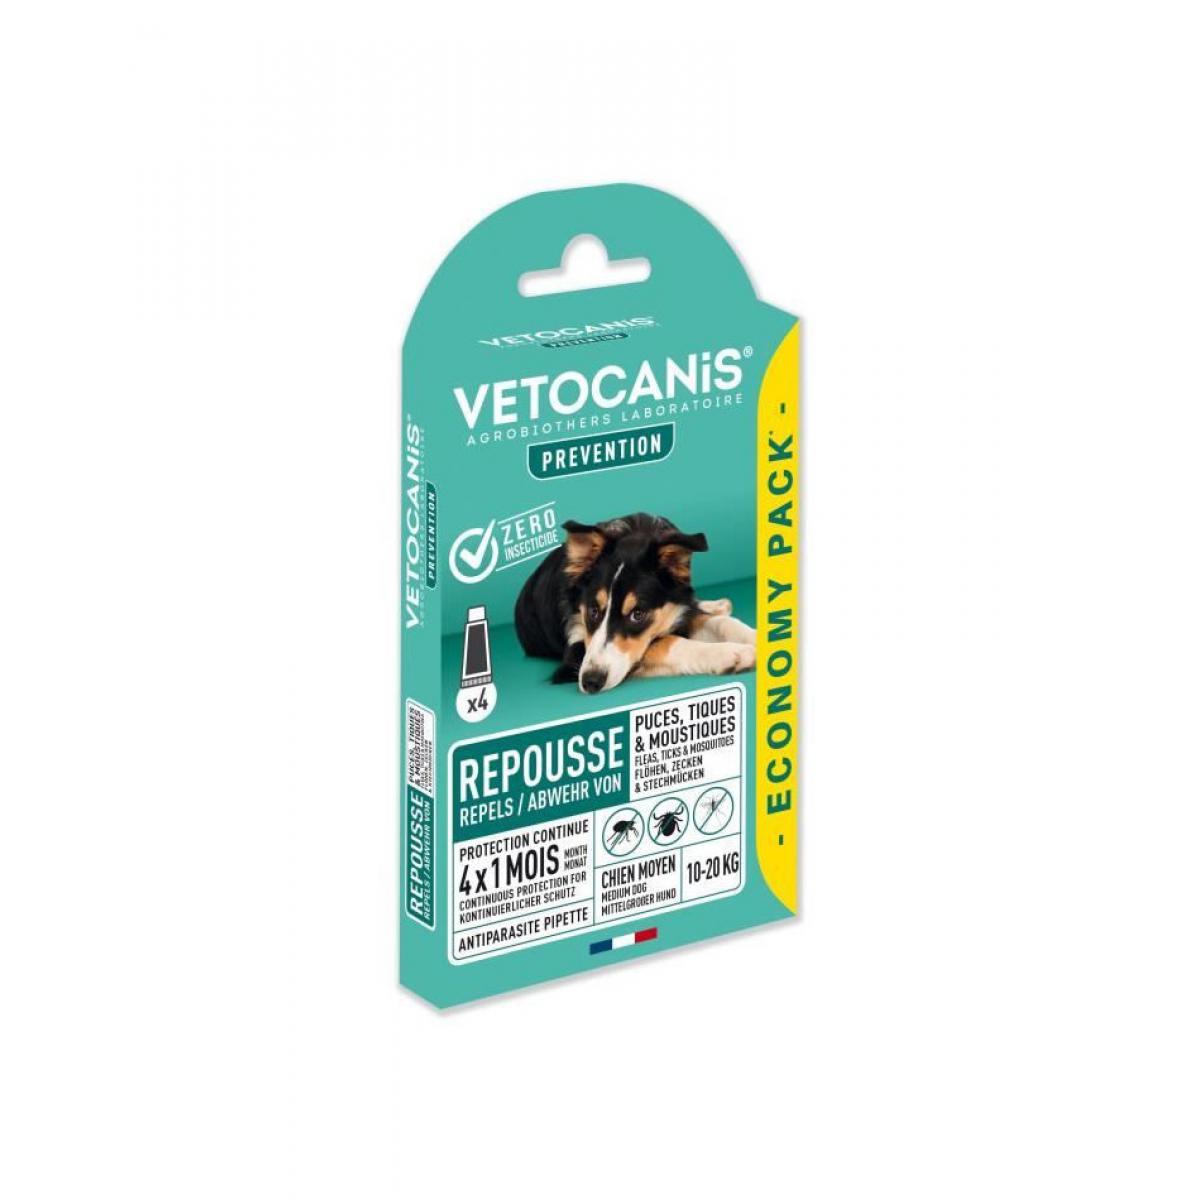 Vetocanis - VETOCANIS 4 Pipettes anti-puces et anti-tiques - Pour chien 10-20 kg - 4x 1 mois de protection - Anti-parasitaire pour chien